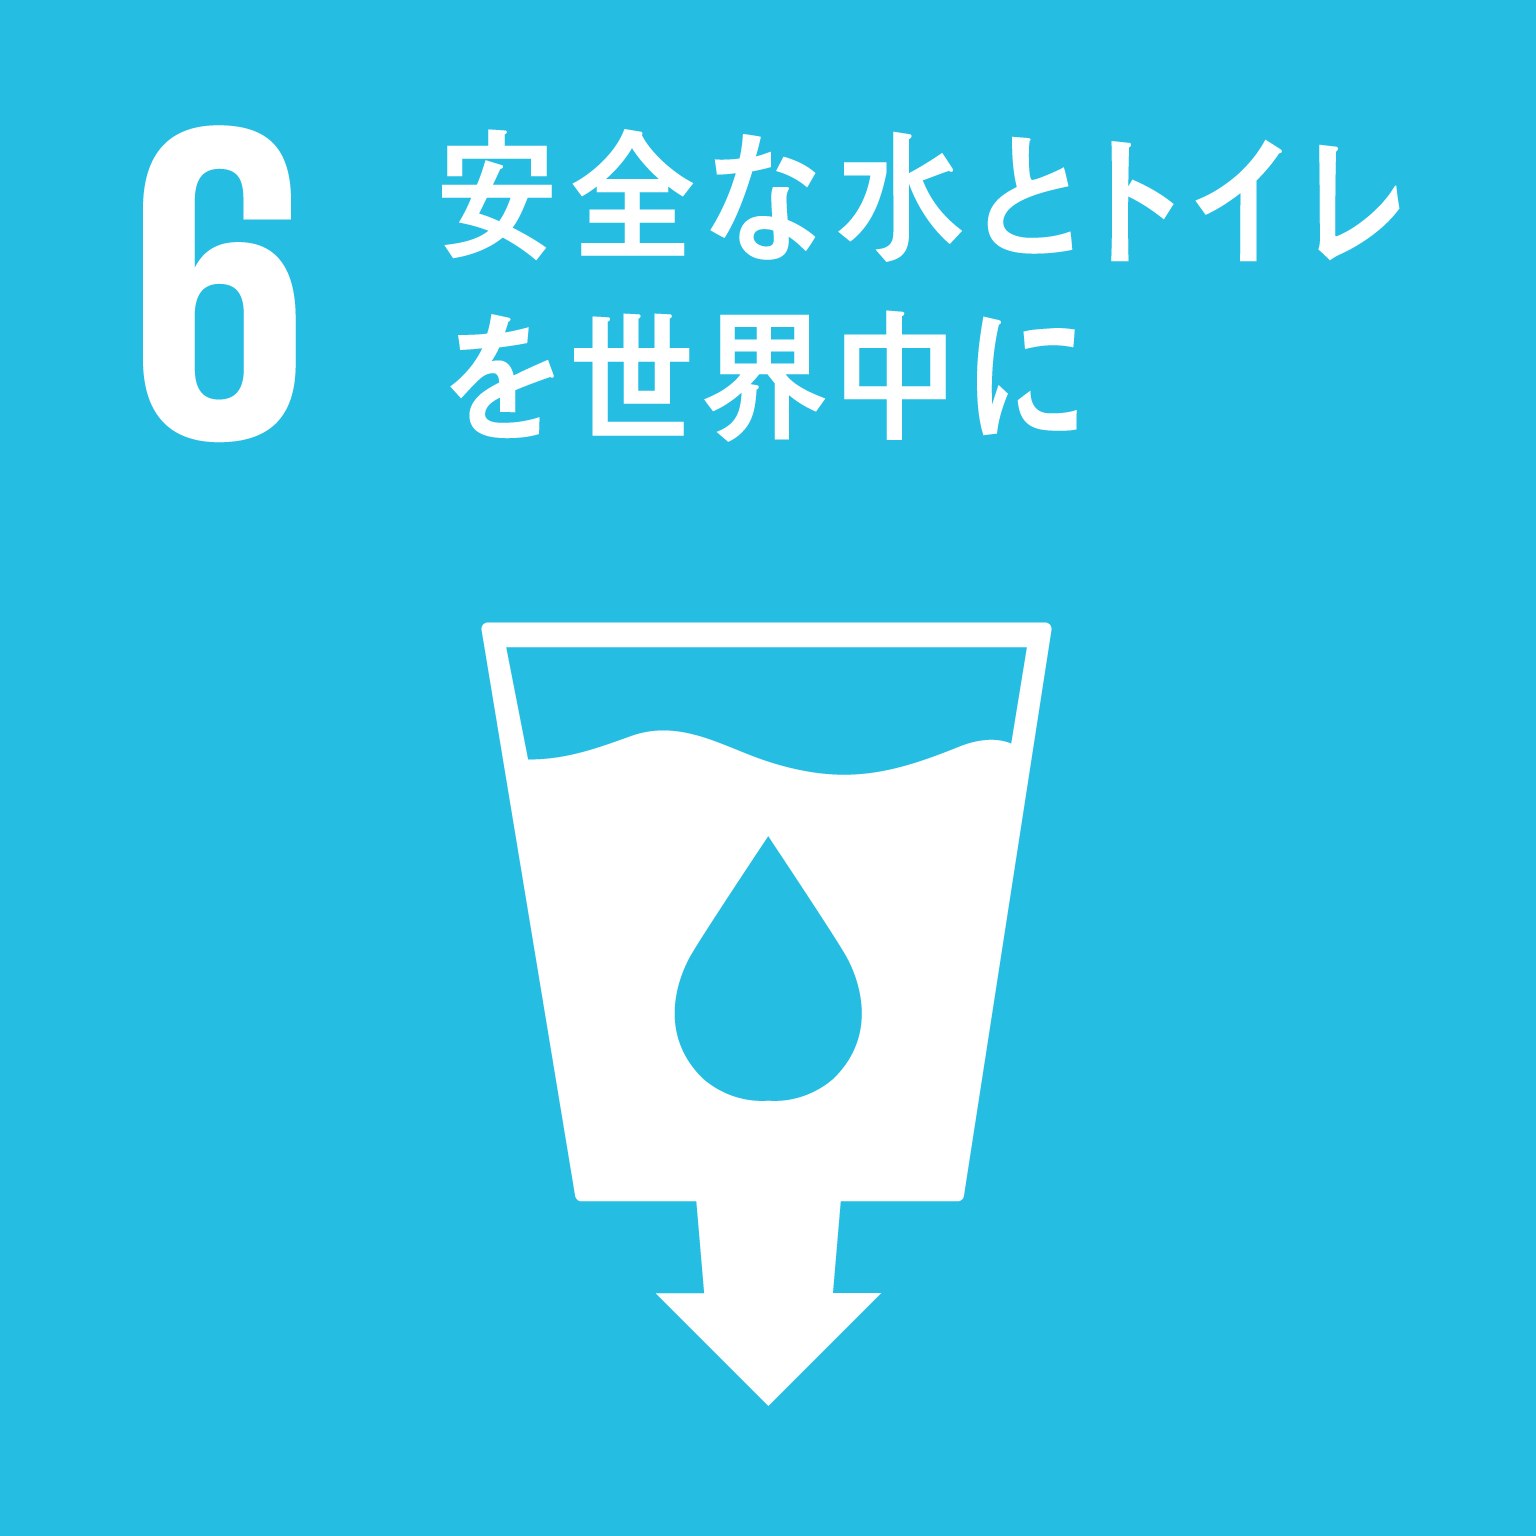 目標6安全な水とトイレを世界中にのロゴ